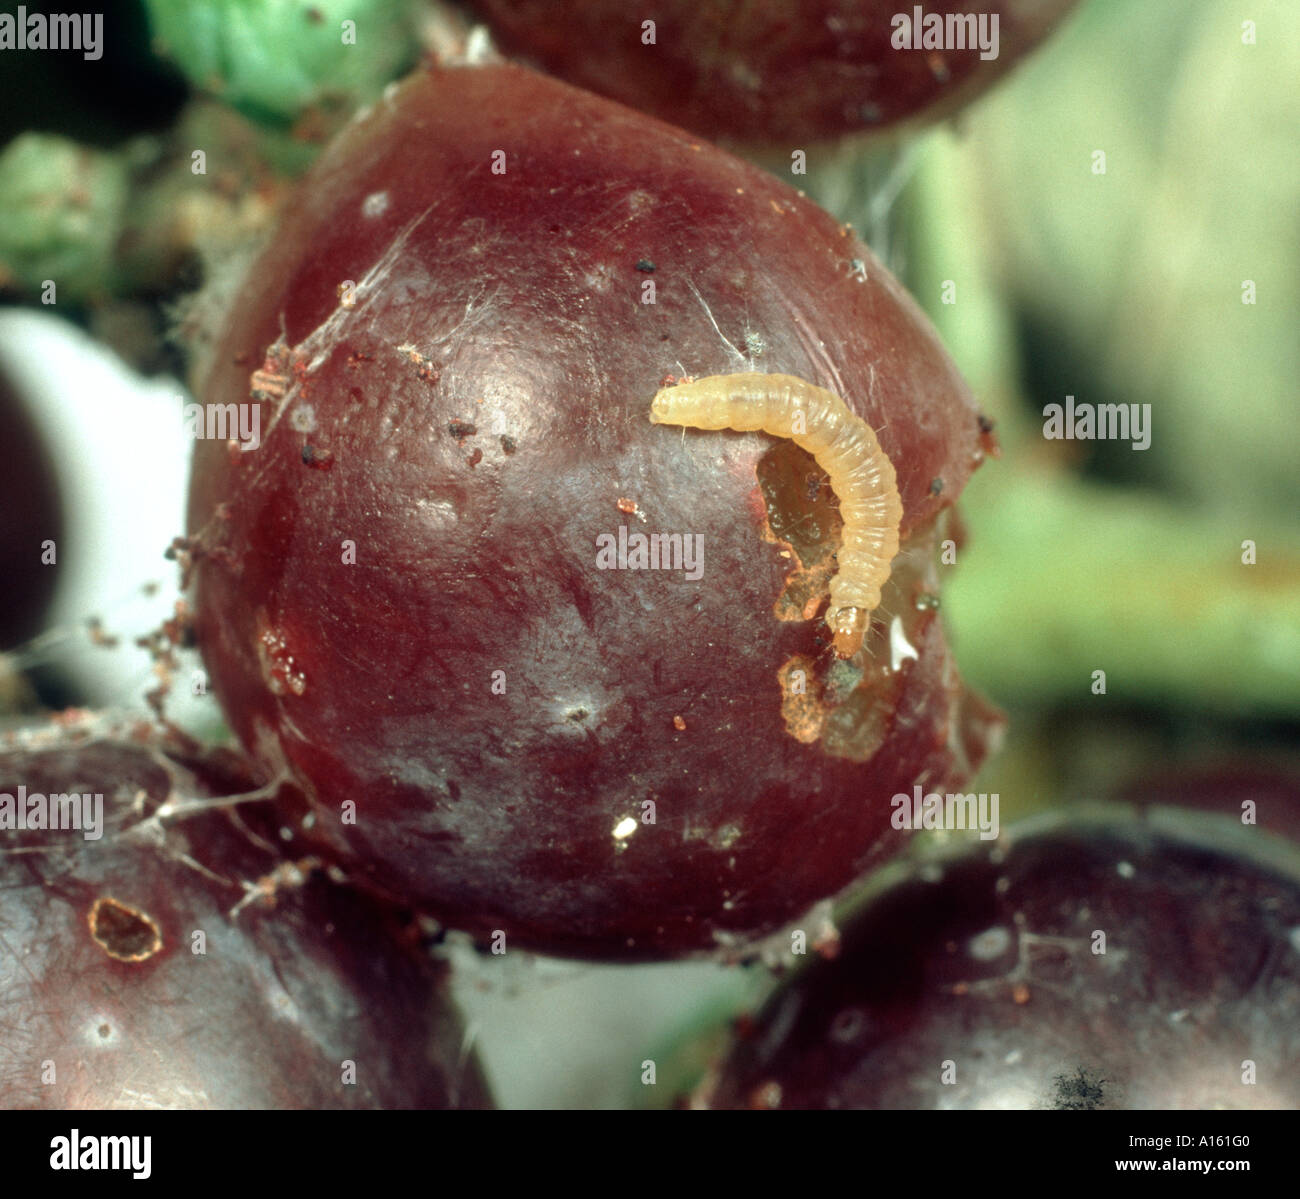 Unione tignole della vite Lobesia botrana caterpillar su uva danneggiata Foto Stock